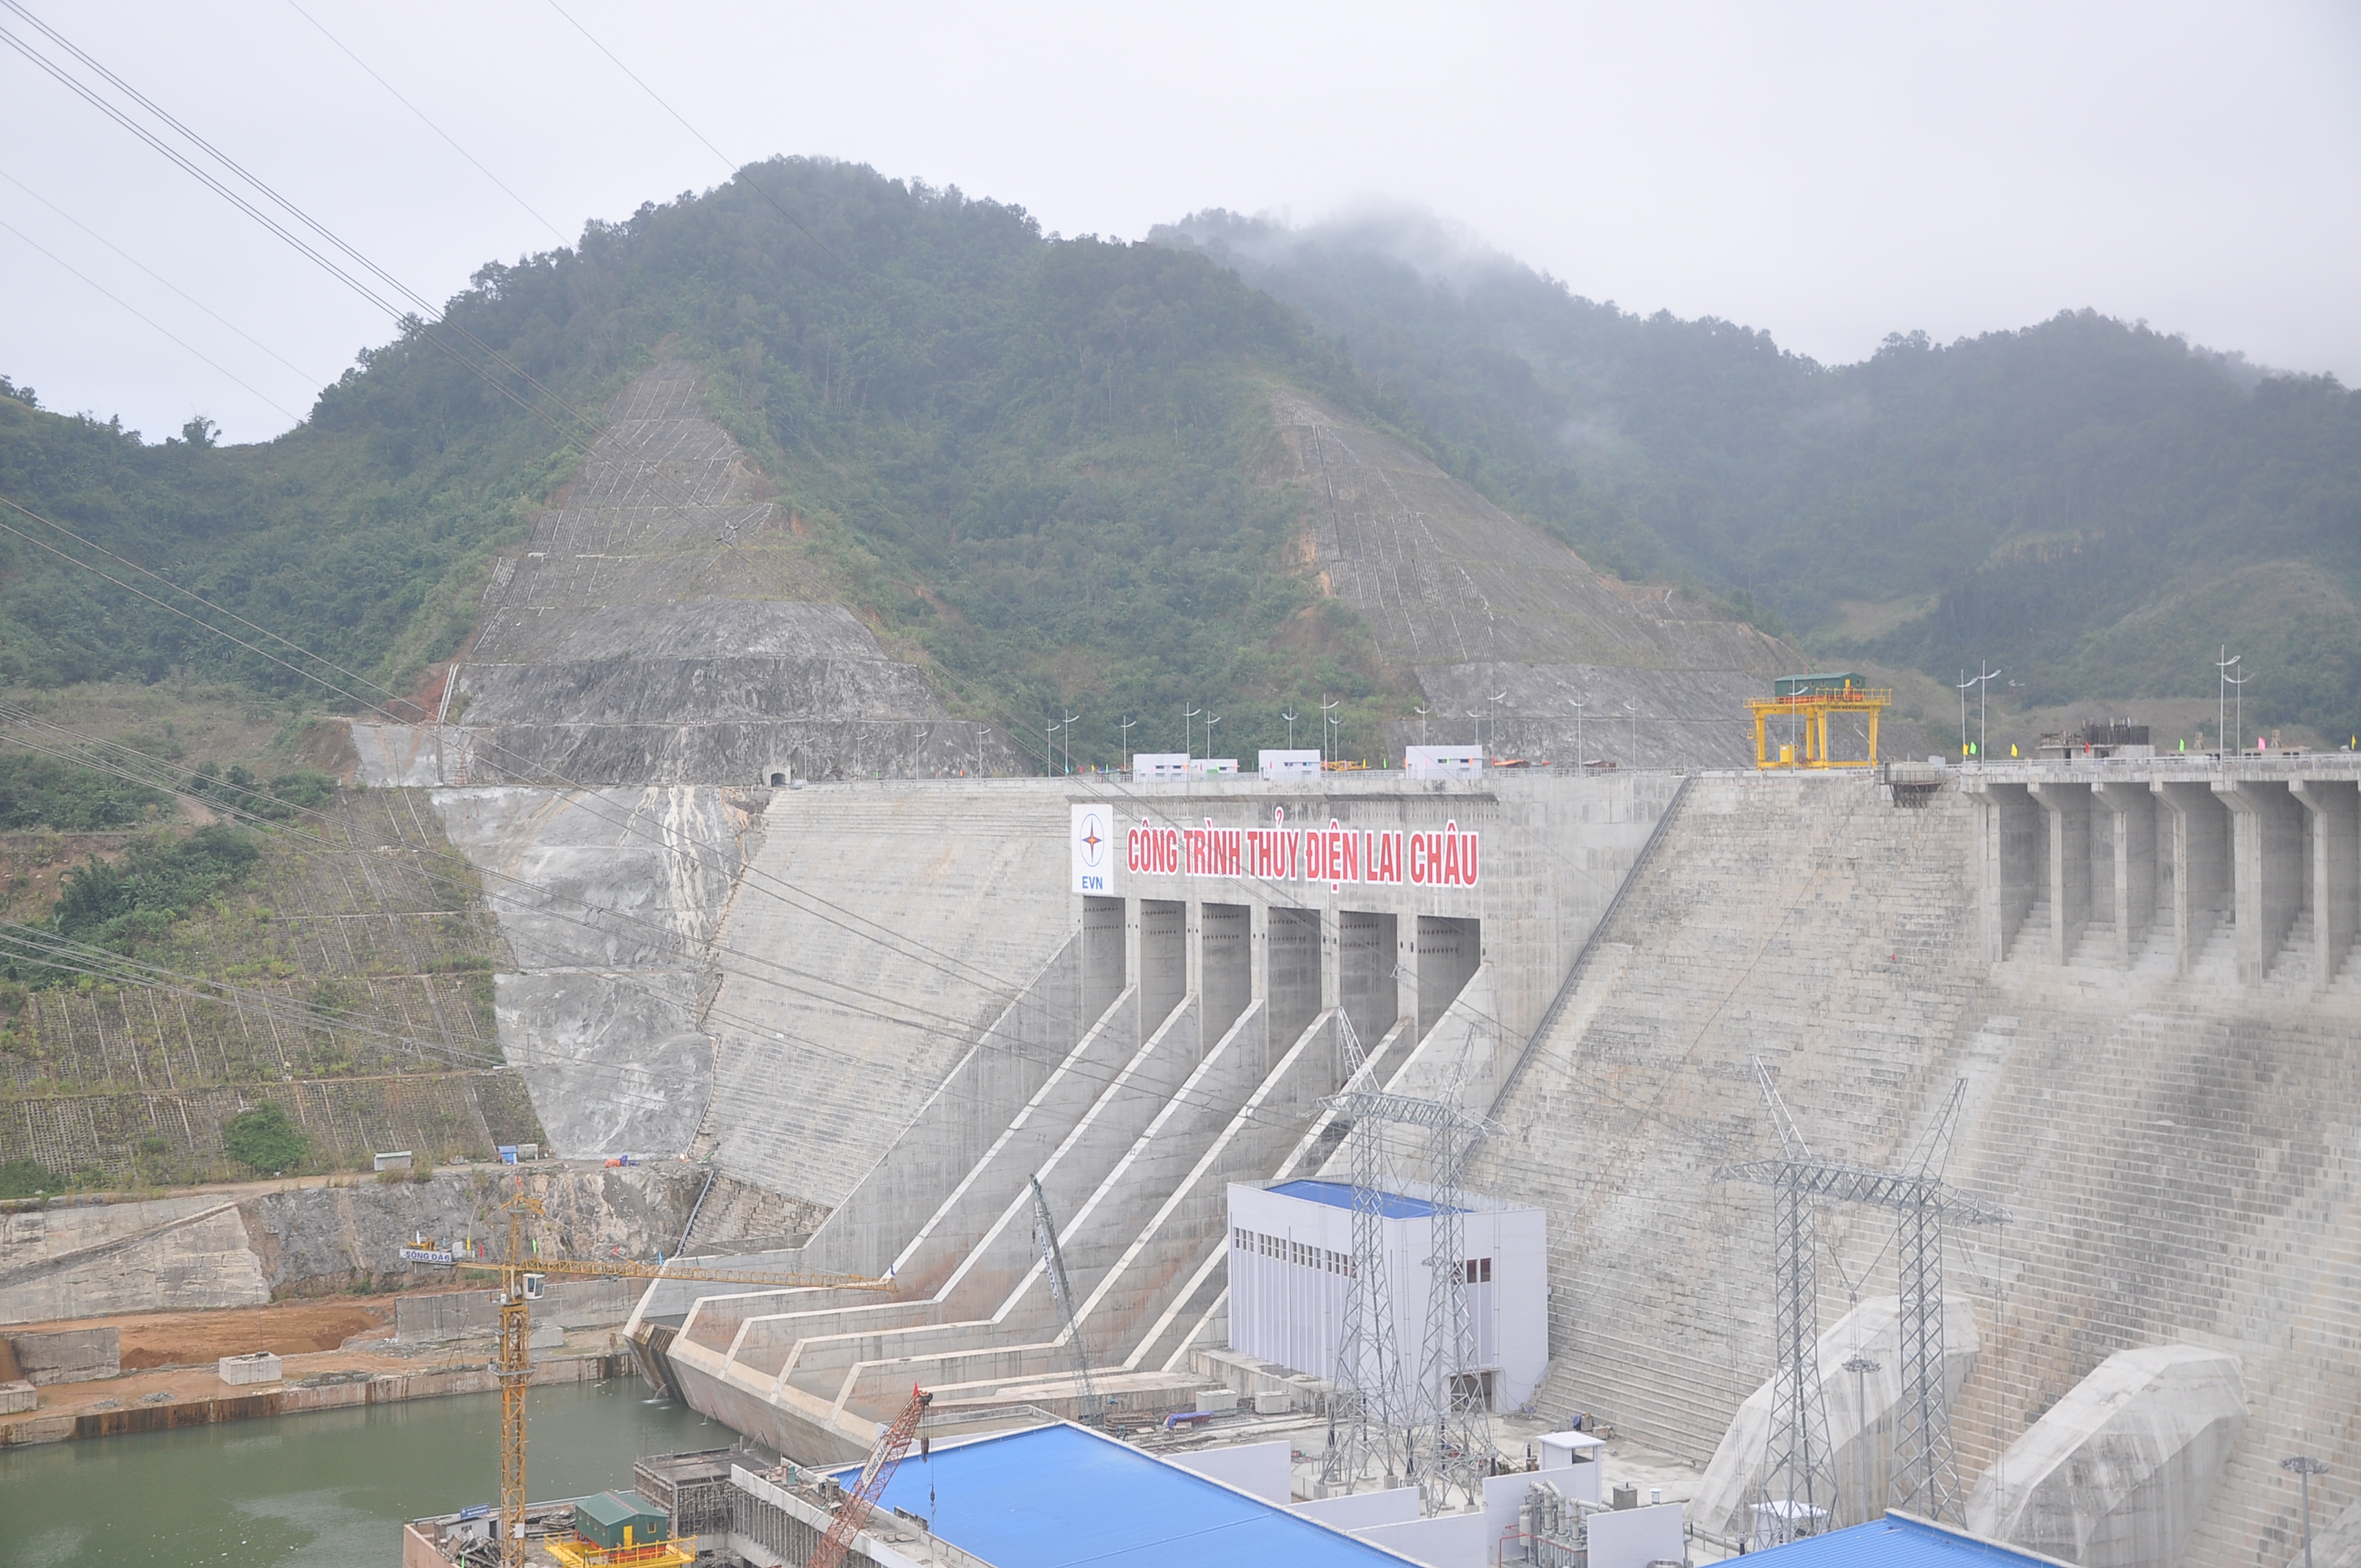 Thủy điện Lai Châu là công trình Thủy điện trên thượng lưu sông Đà. Dự án nằm trên địa bàn vùng giáp biên và vùng sâu vùng xa hạng đặc biệt